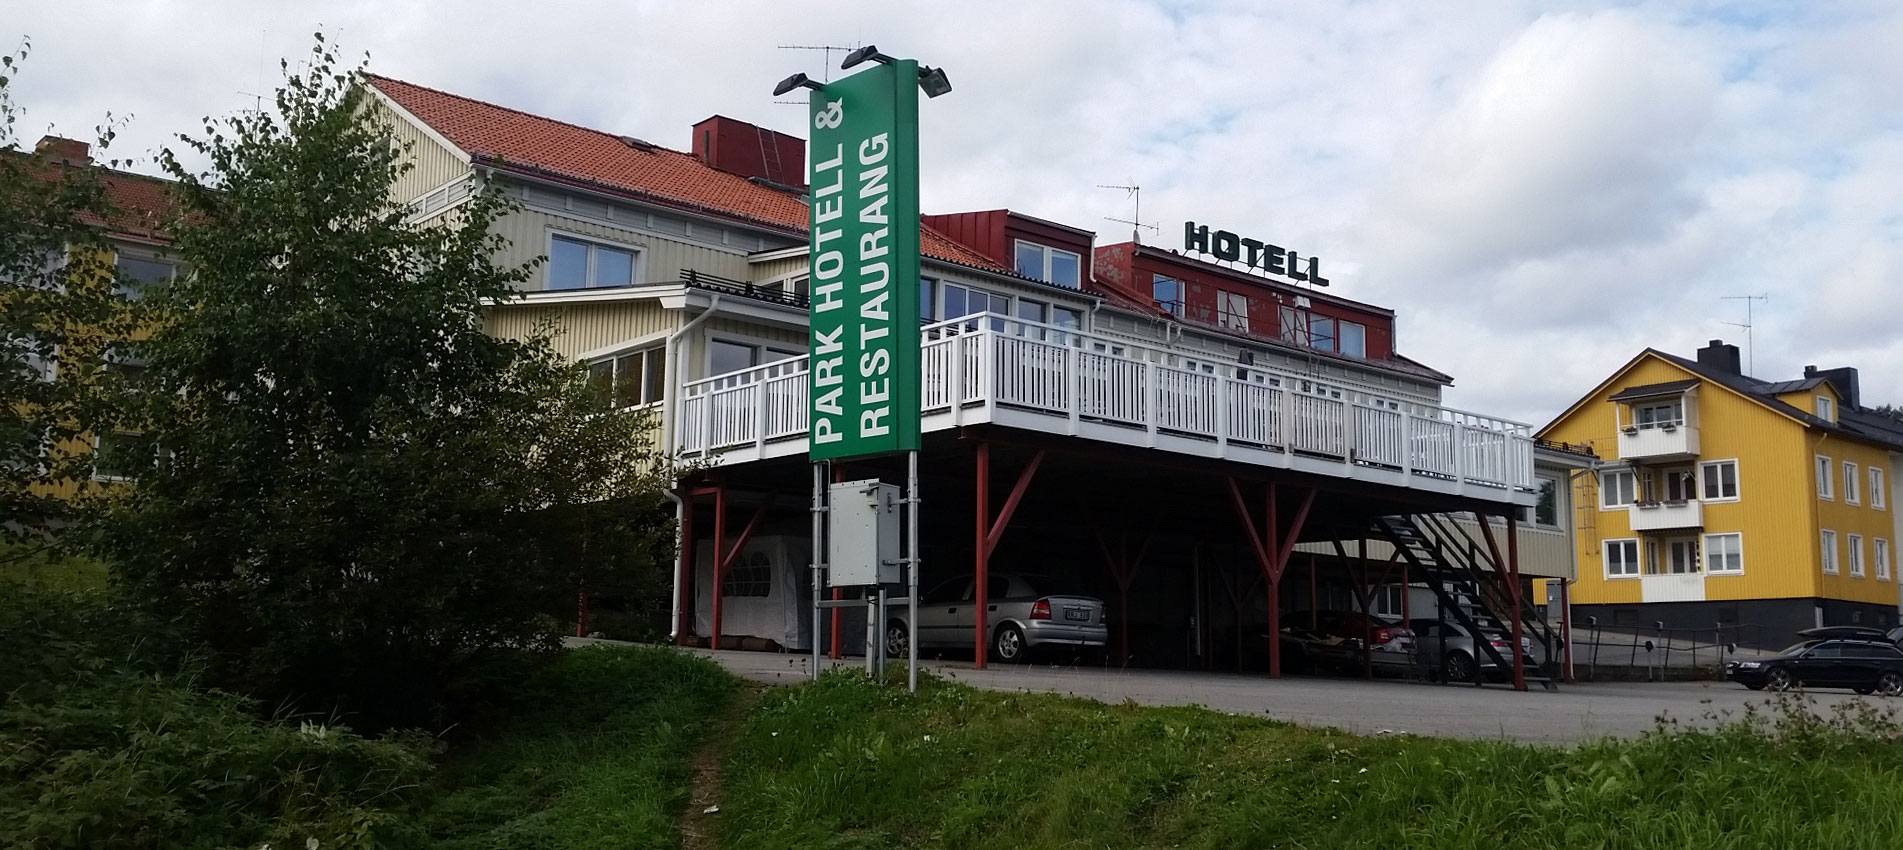 Hotell, Hotel, Lycksele, Umeå, Skellefteå, Västerbotten, Norrland